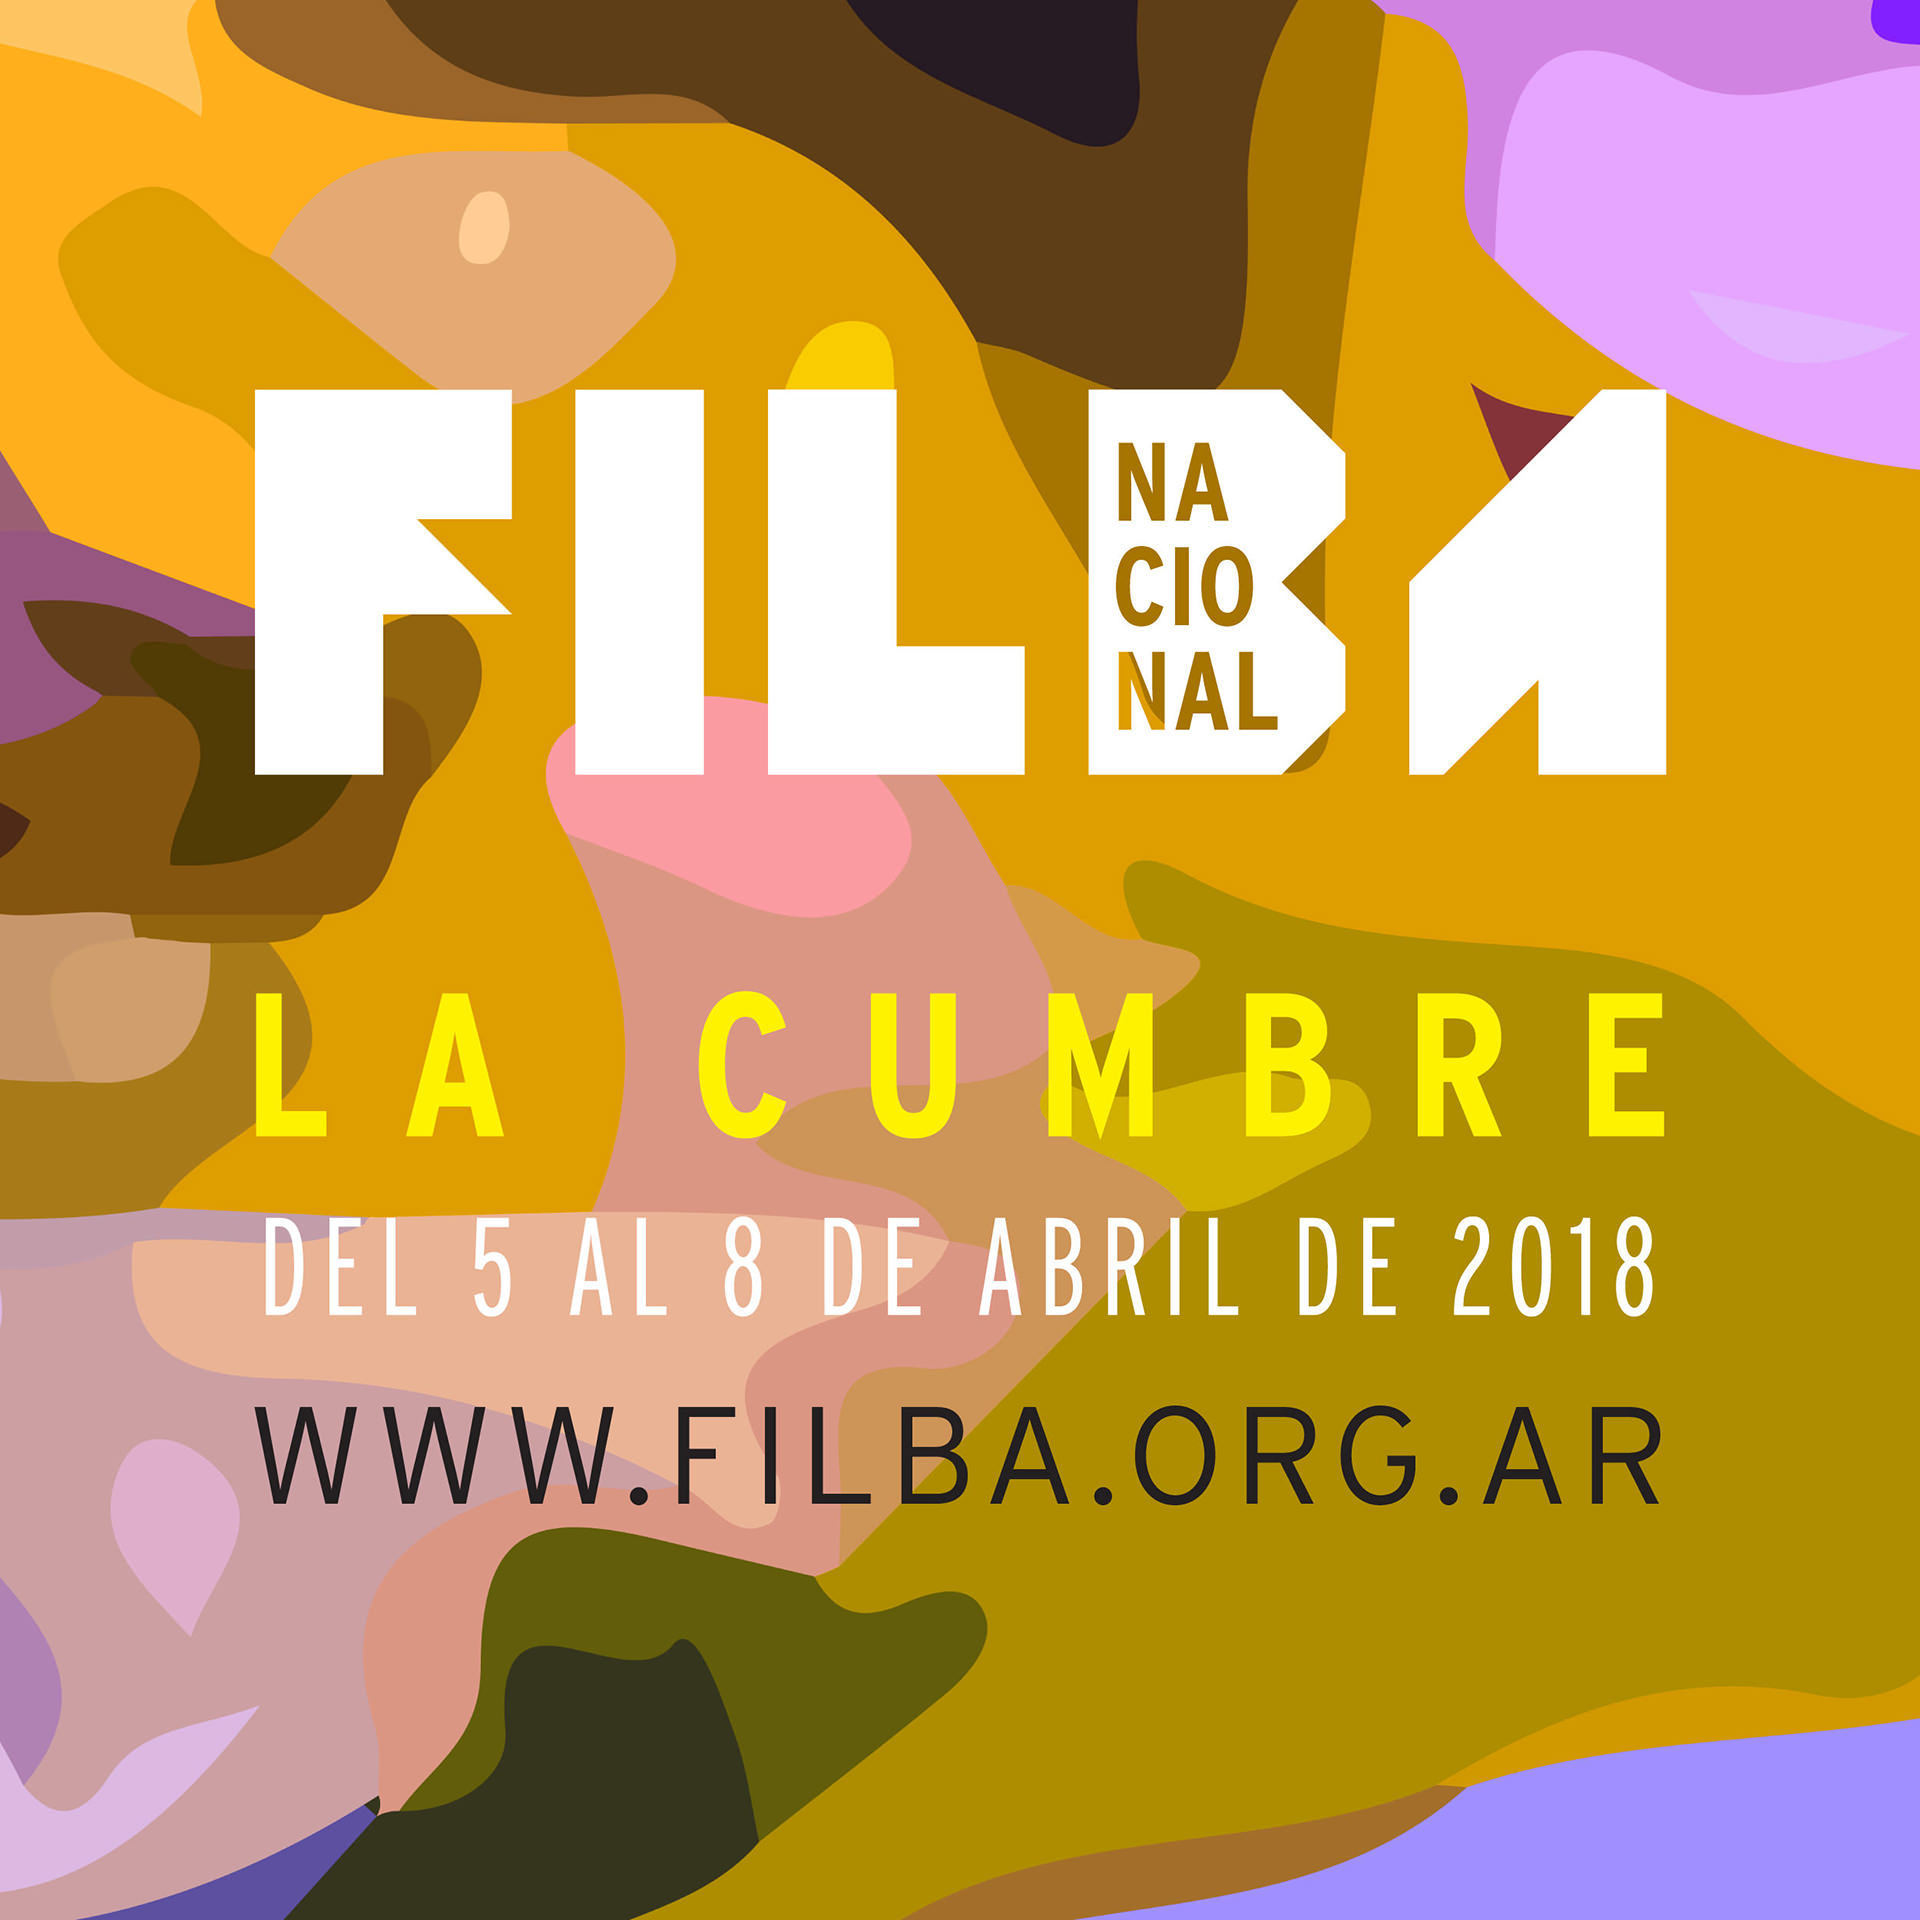 Filba Nacional La Cumbre 2018